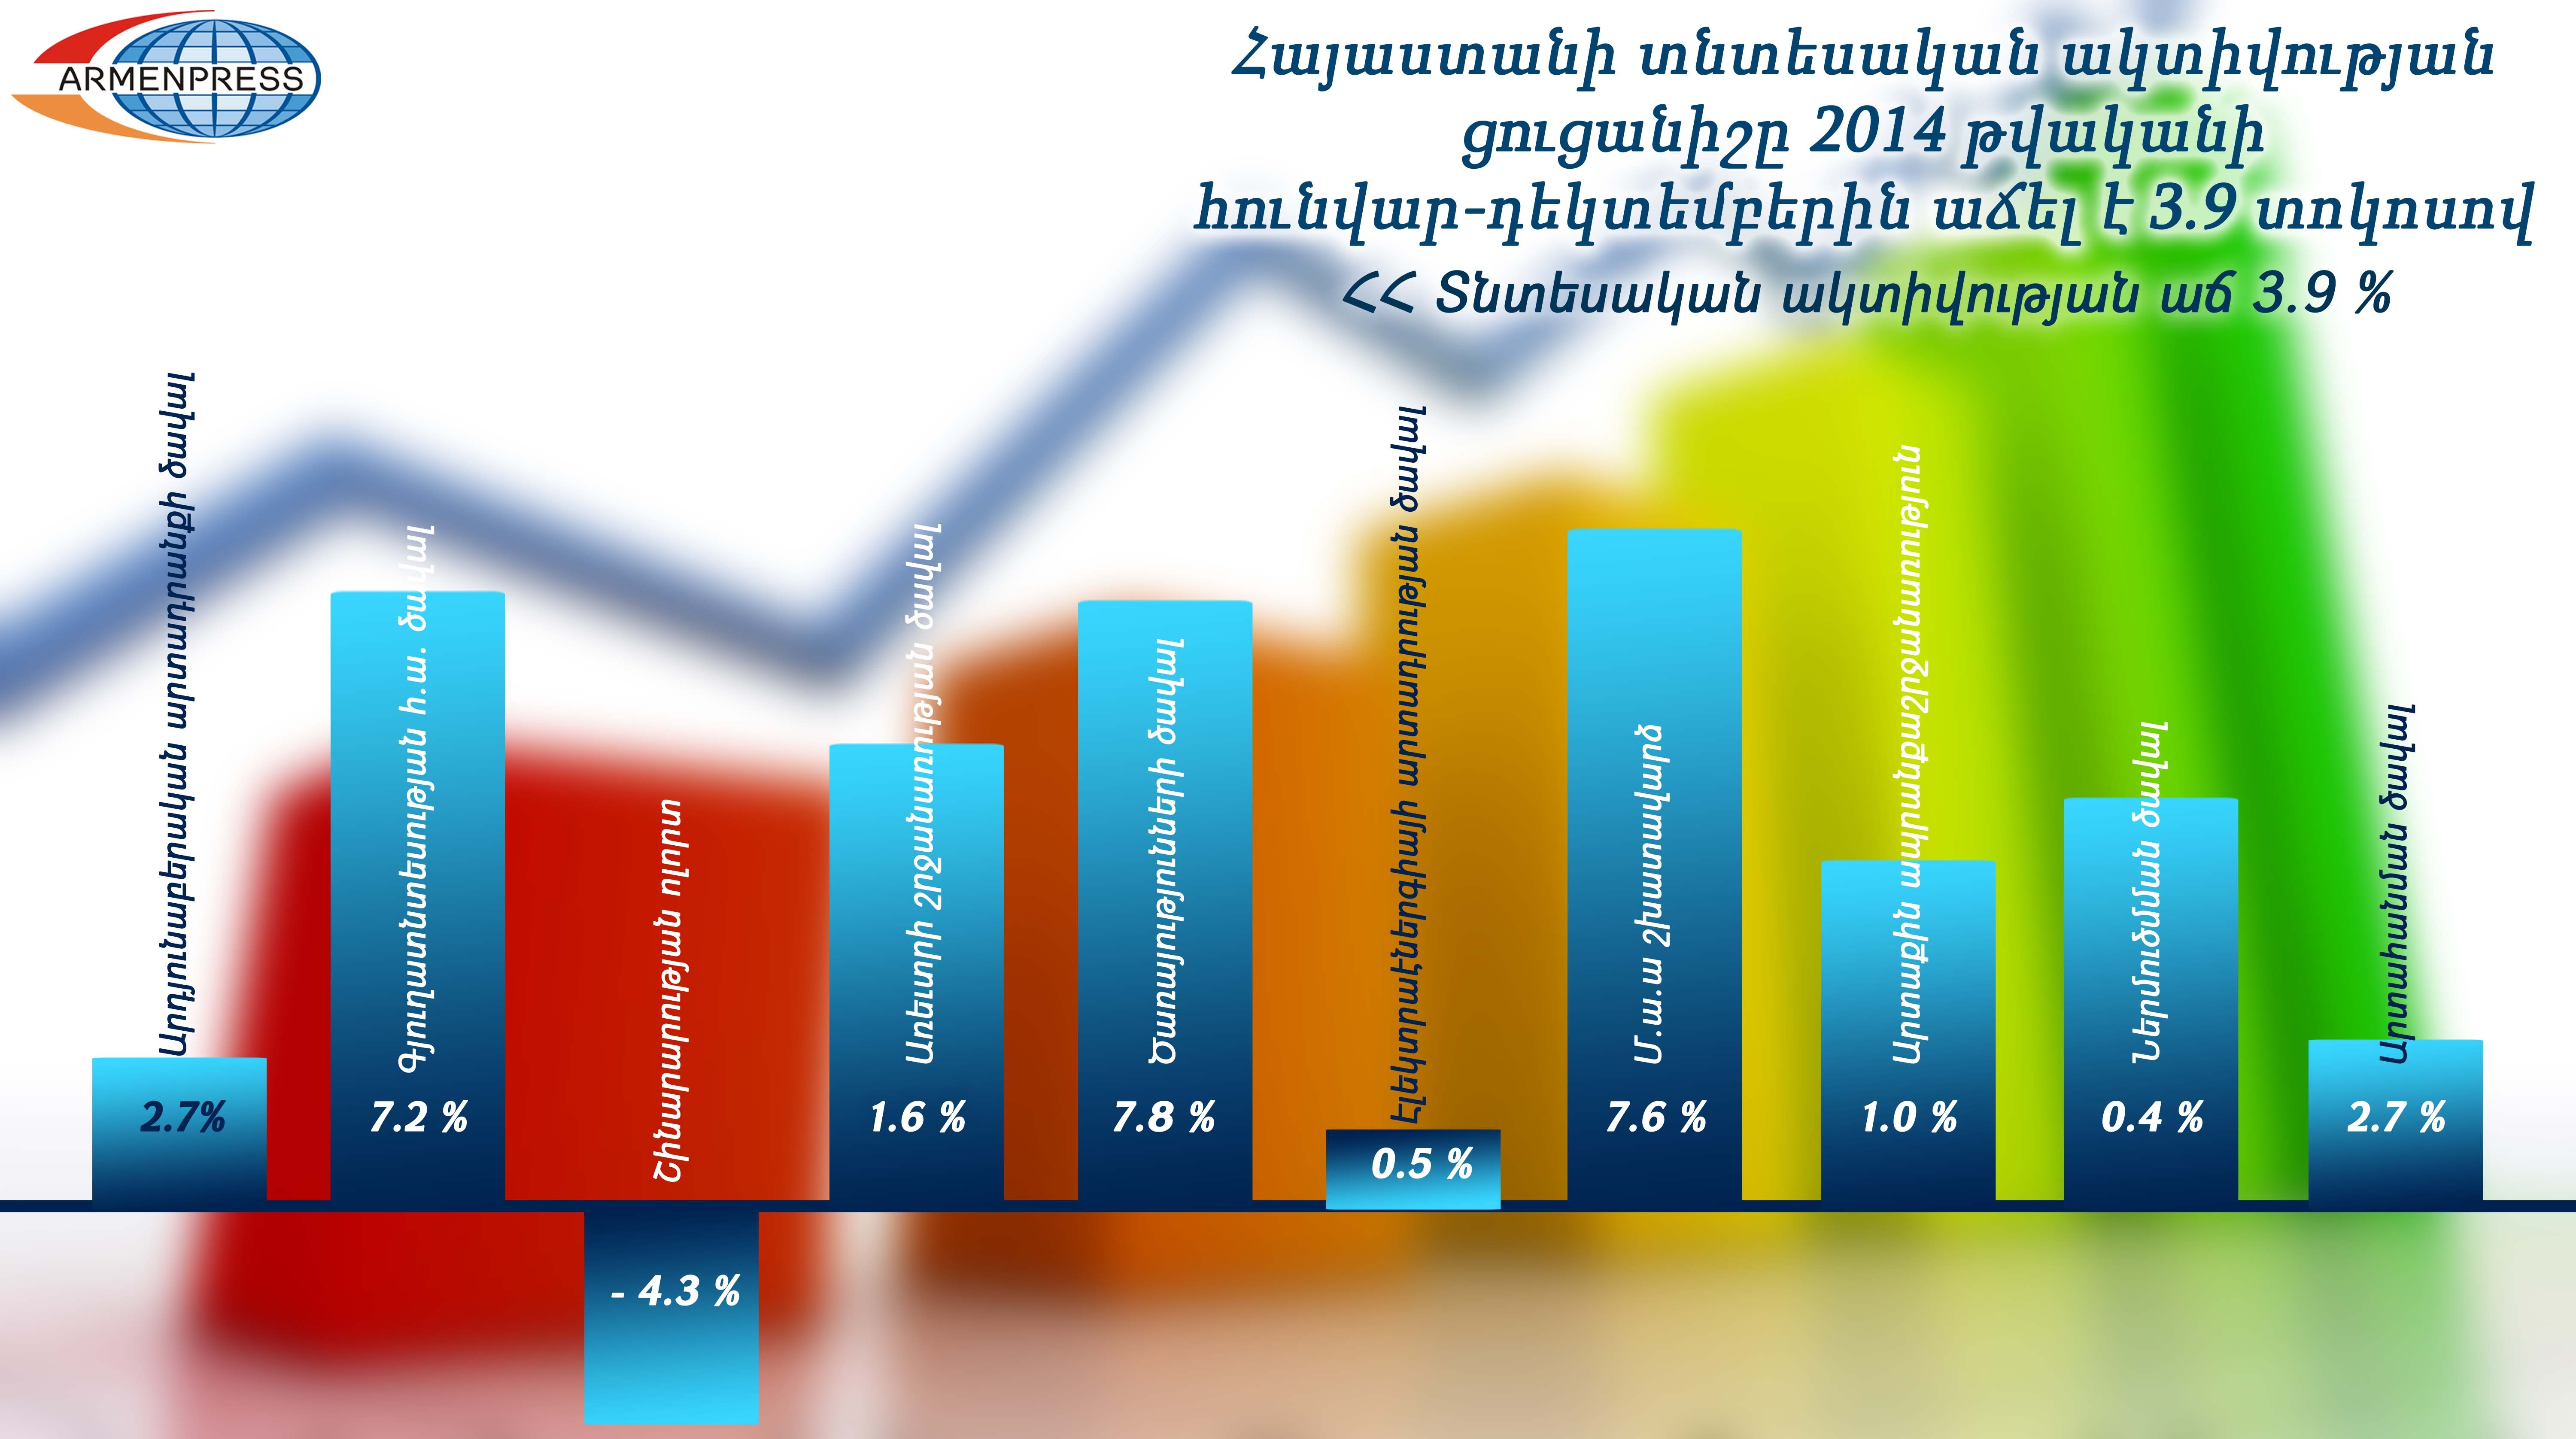 Հայաստանի տնտեսական ակտիվությունը տարեկան կտրվածքով աճել է 3.9 տոկոսով